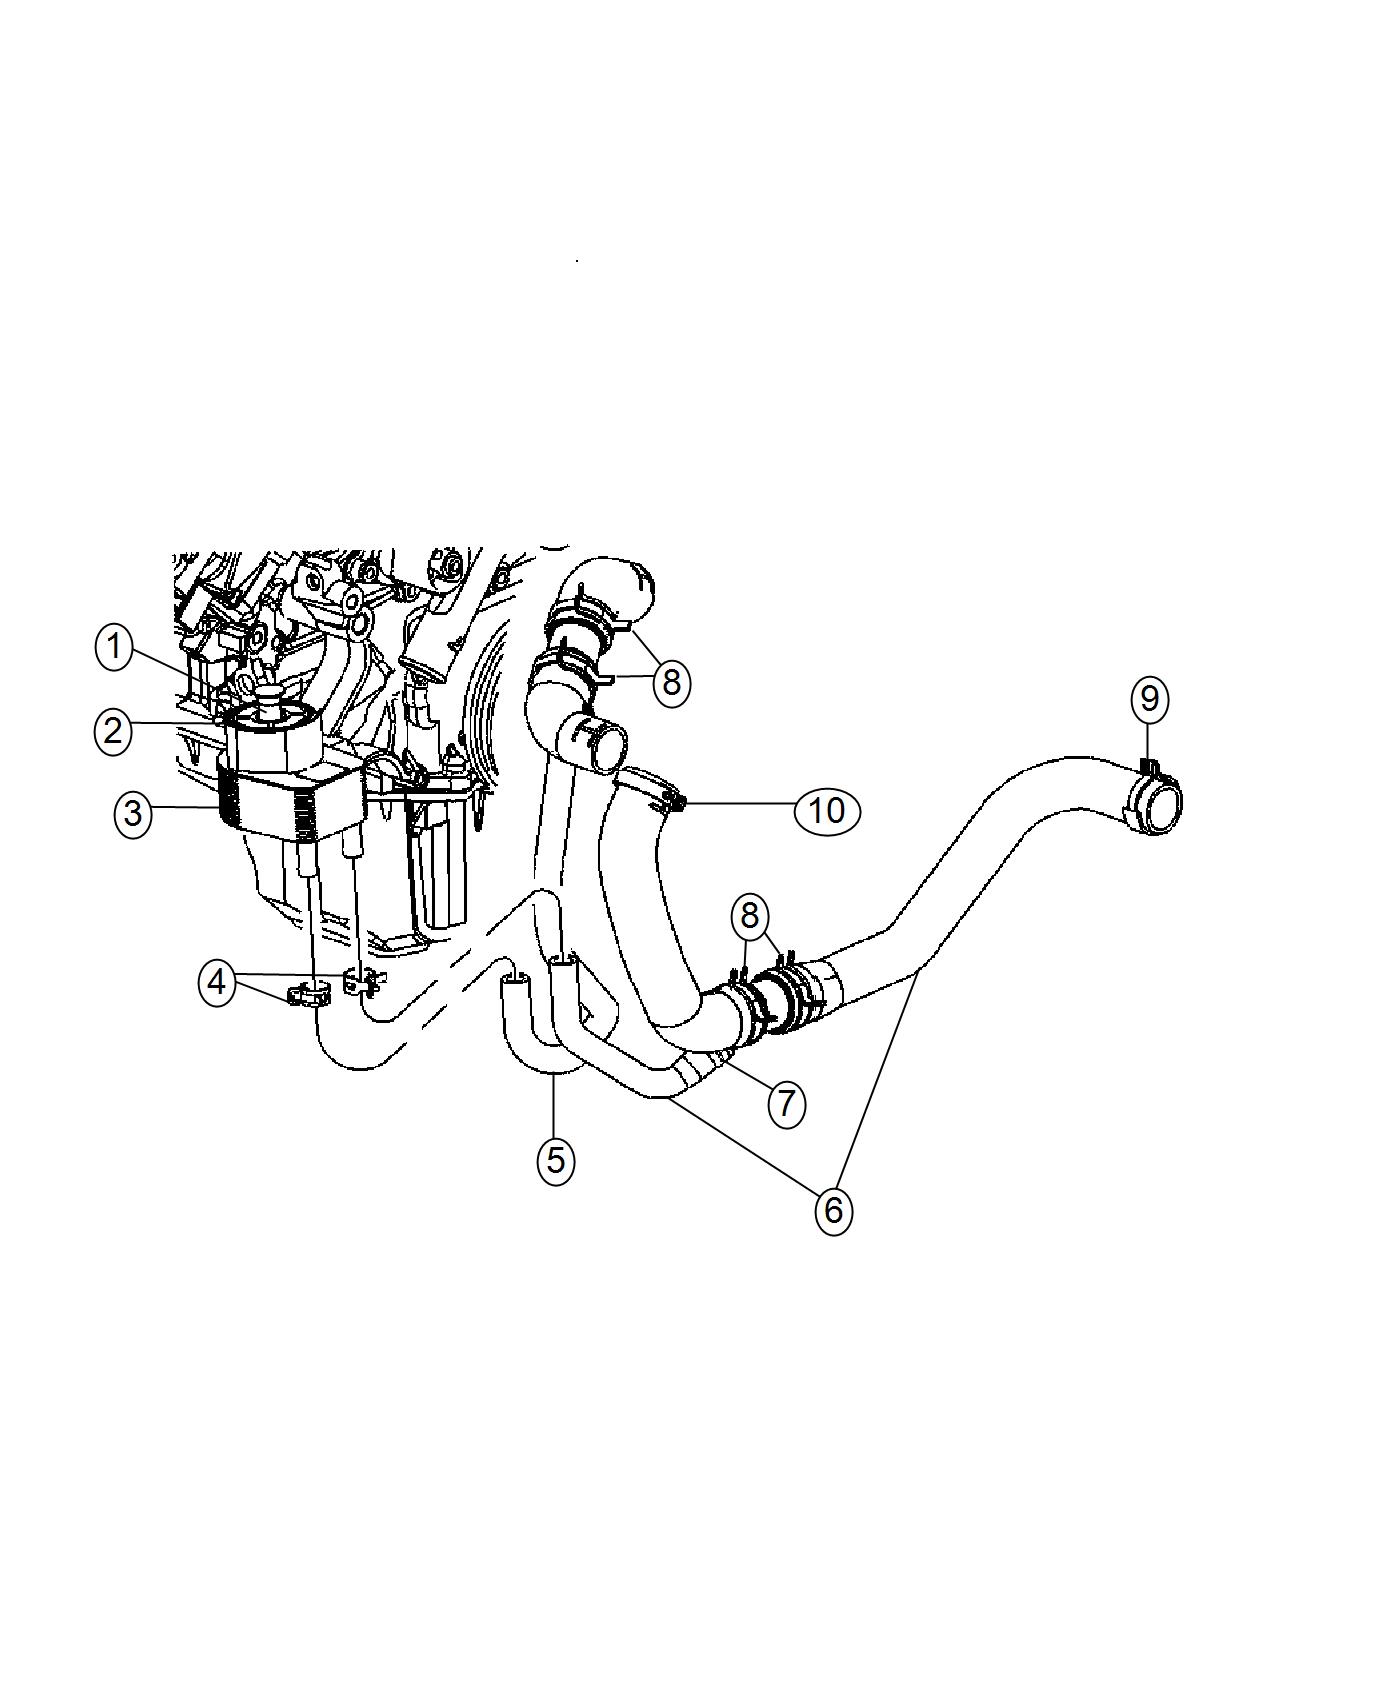 Engine Oil Cooler And Hoses/Tubes 6.4L [6.4L V8 SRT HEMI MDS Engine]. Diagram